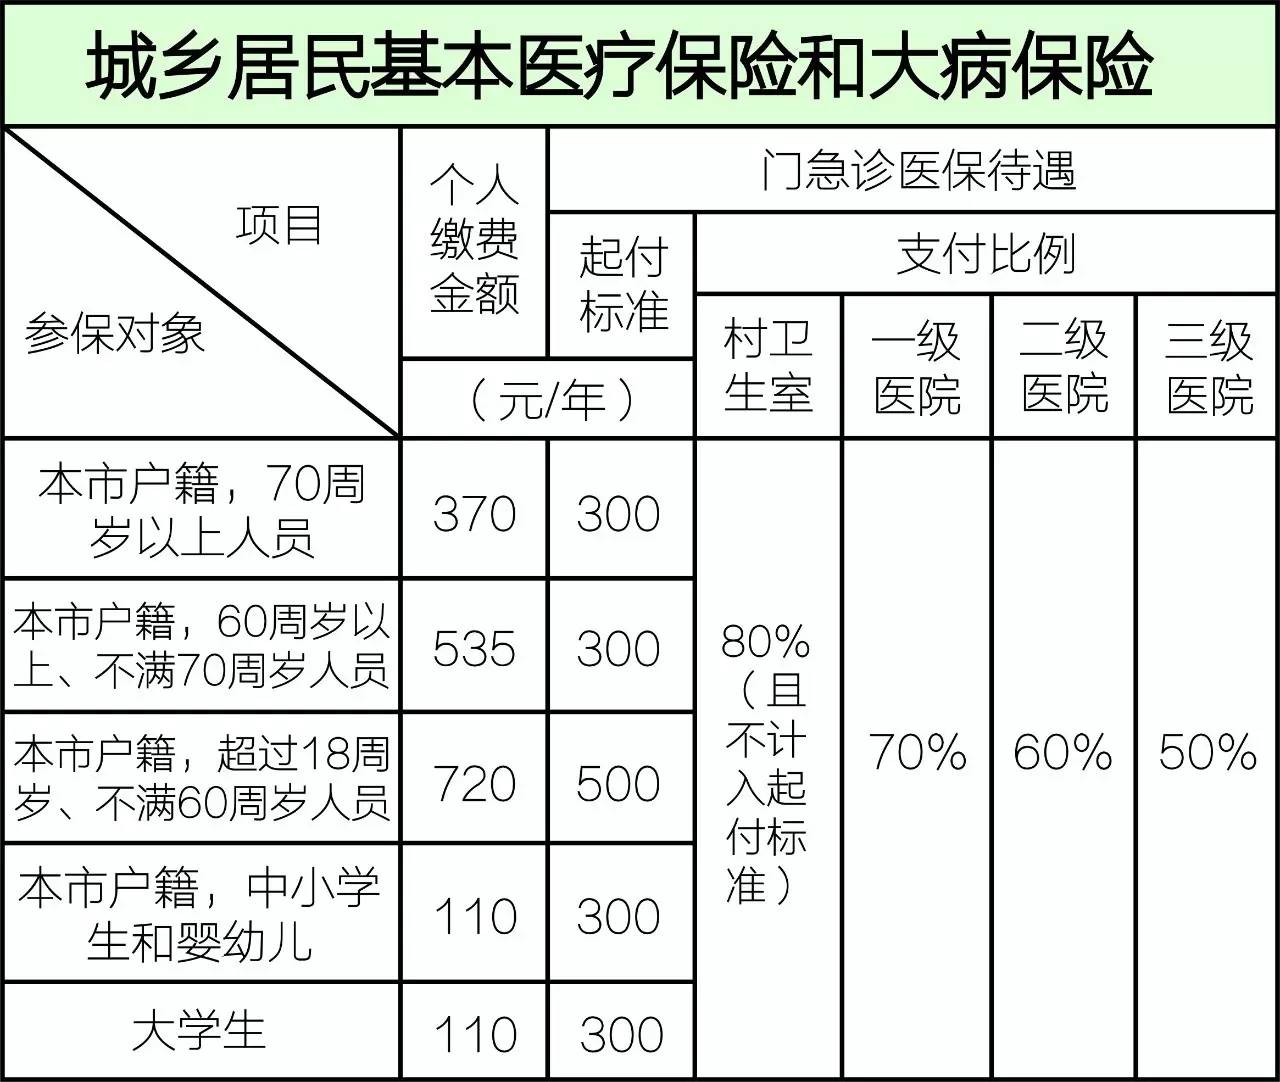 在上海,最少交多少钱可享社保?职工/居民/宝宝/学生,标准如下